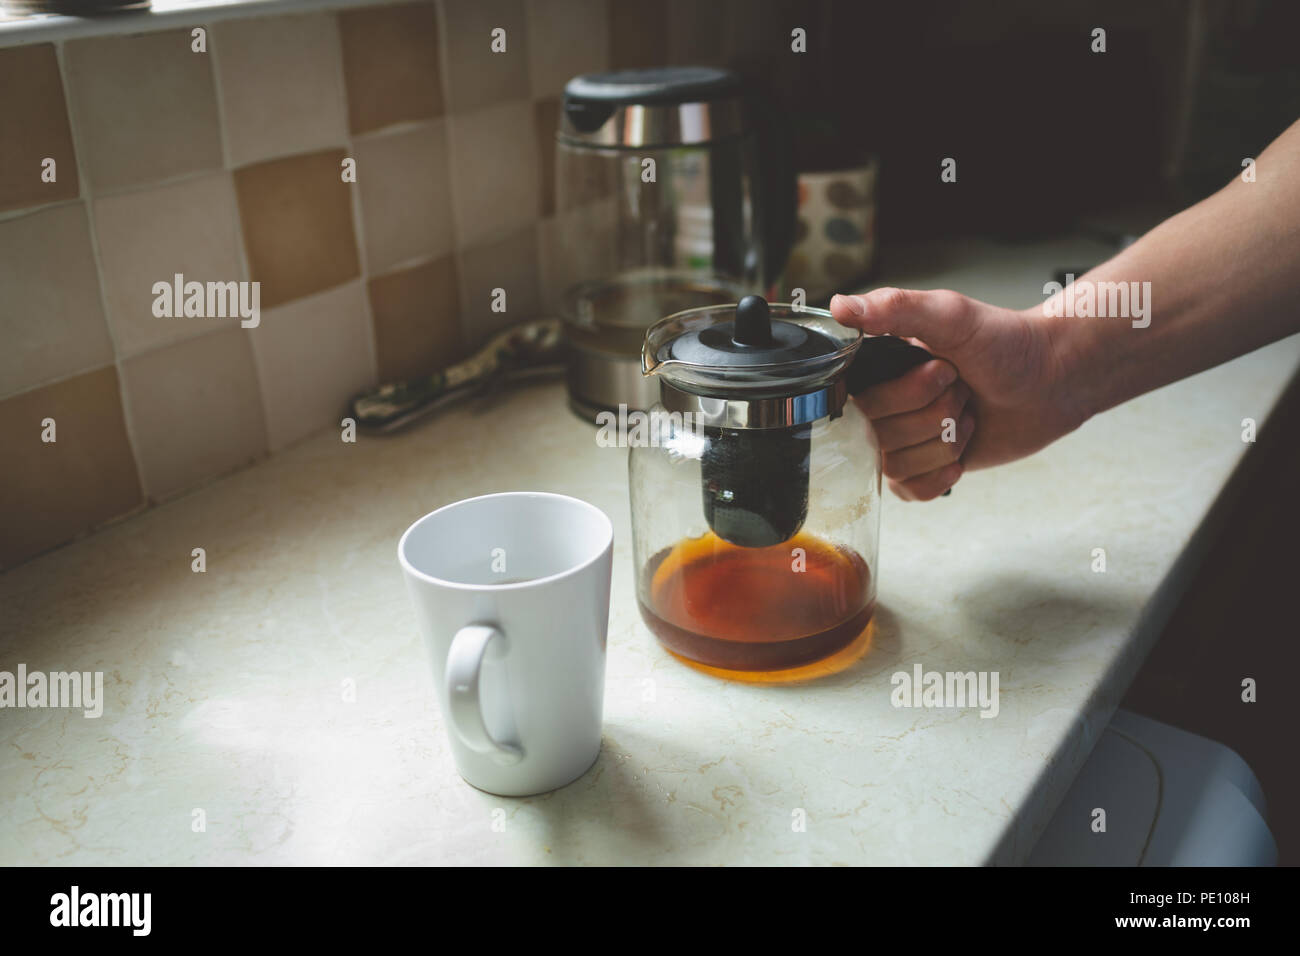 Filtro per caffè e jar mug sul piano di lavoro della cucina Foto Stock